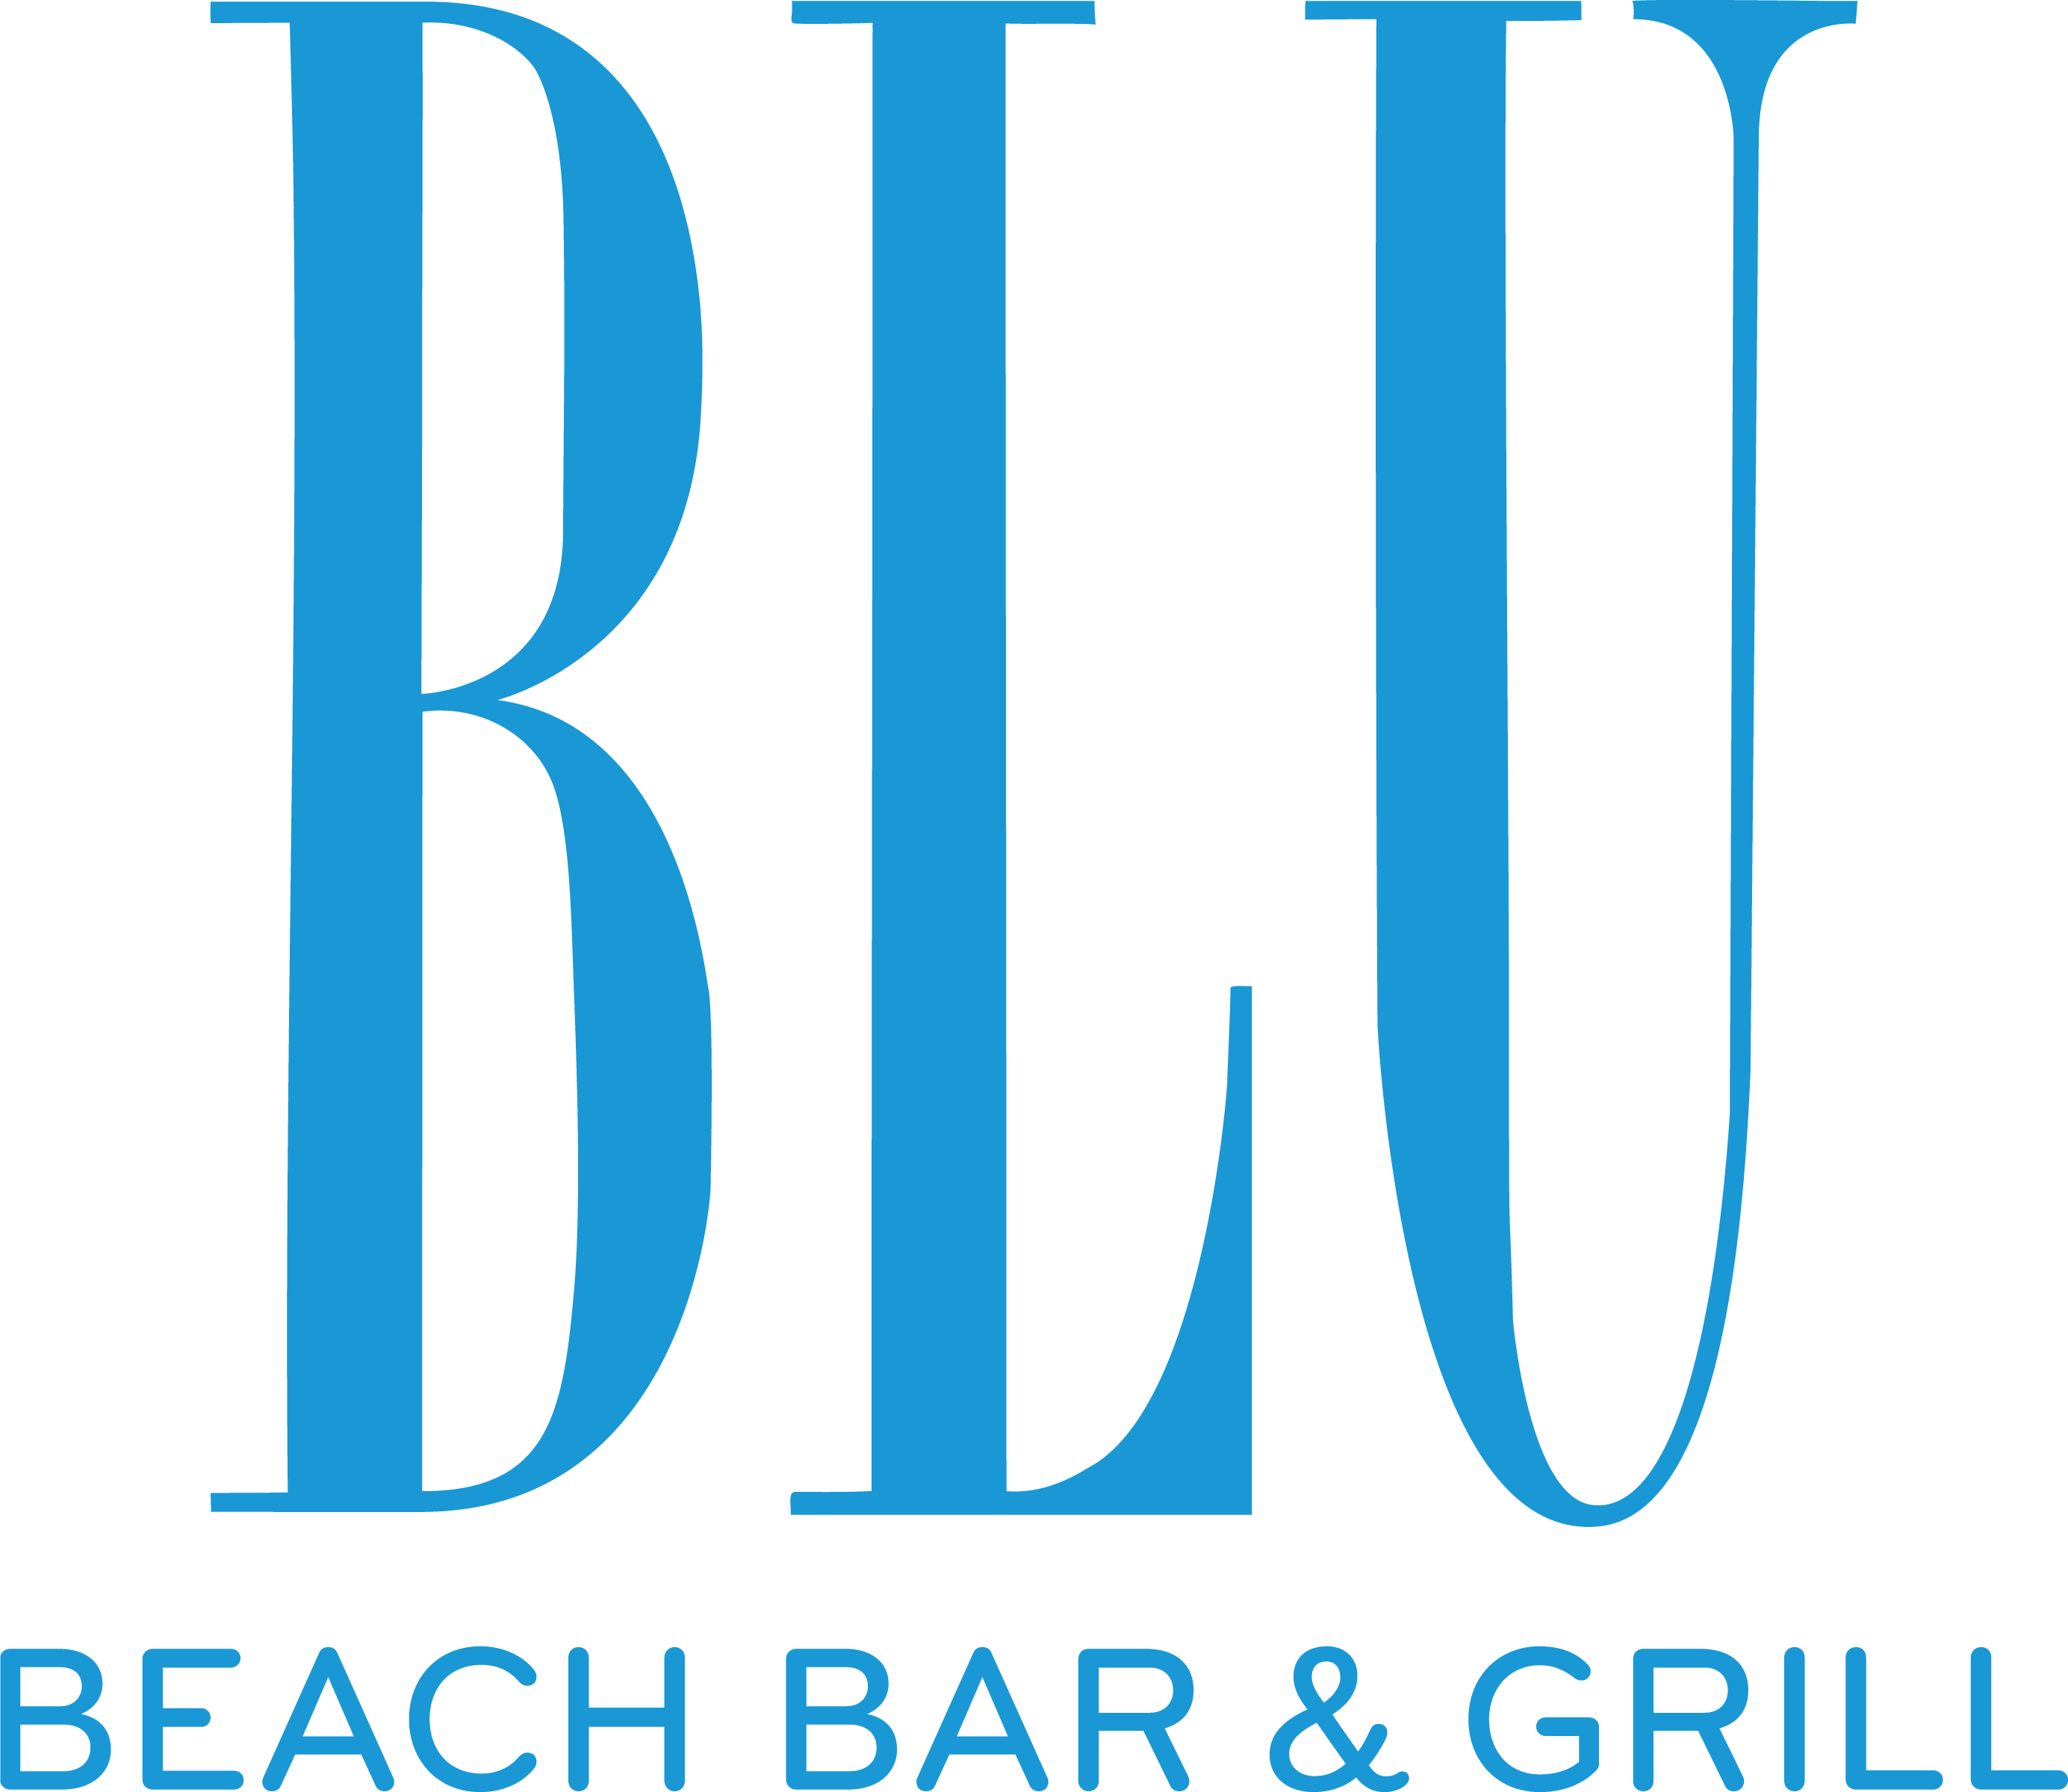 BLU Beach Bar & Grill Home